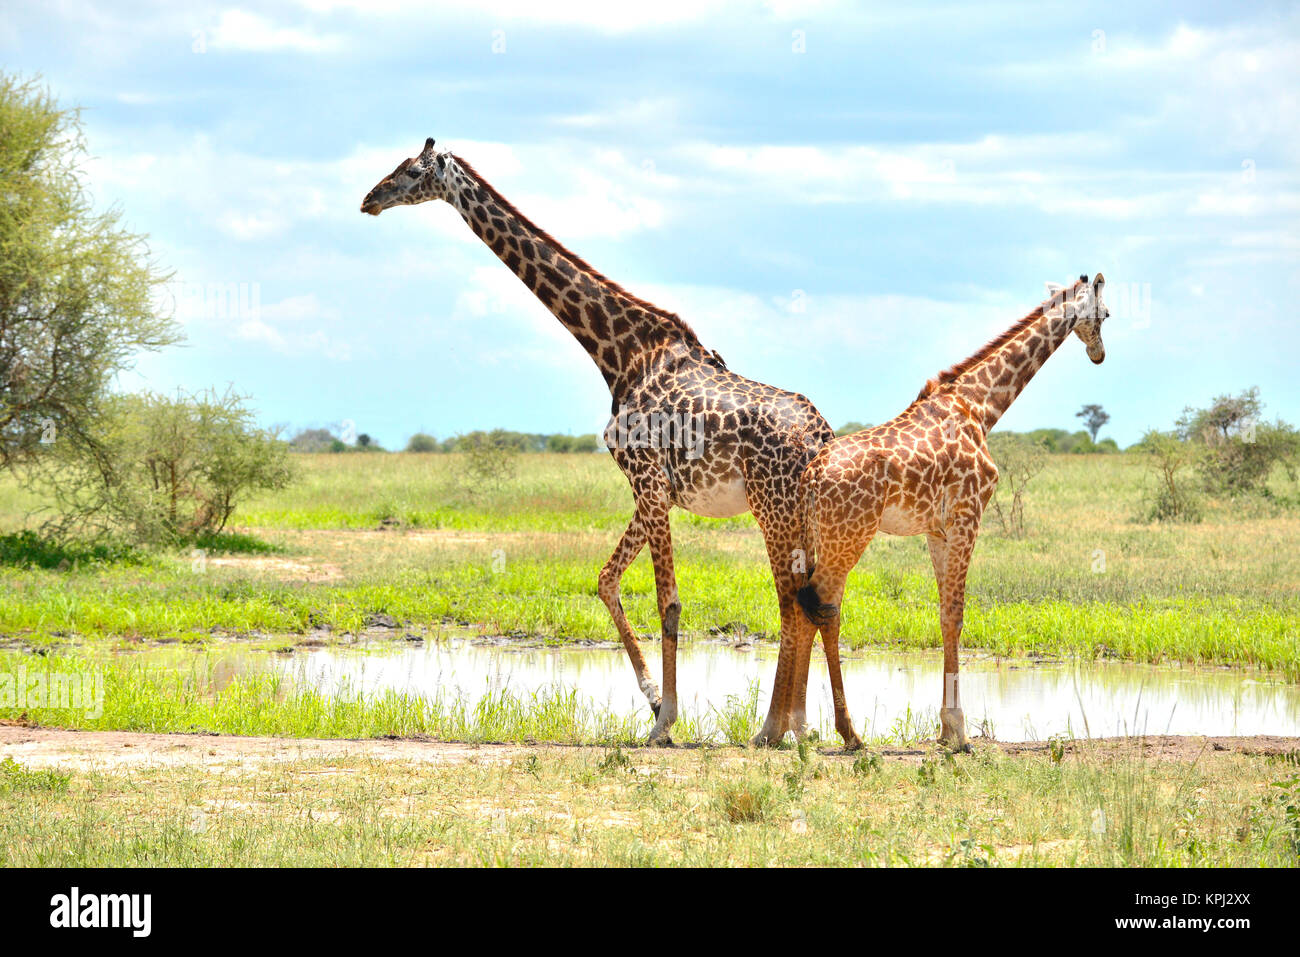 Der Tarangire National Park in Tansania ist ein unentdecktes Juwel mit schönen Landschaften entlang der Tarangire River. Giraffe Trinkwasser im Pan. Stockfoto